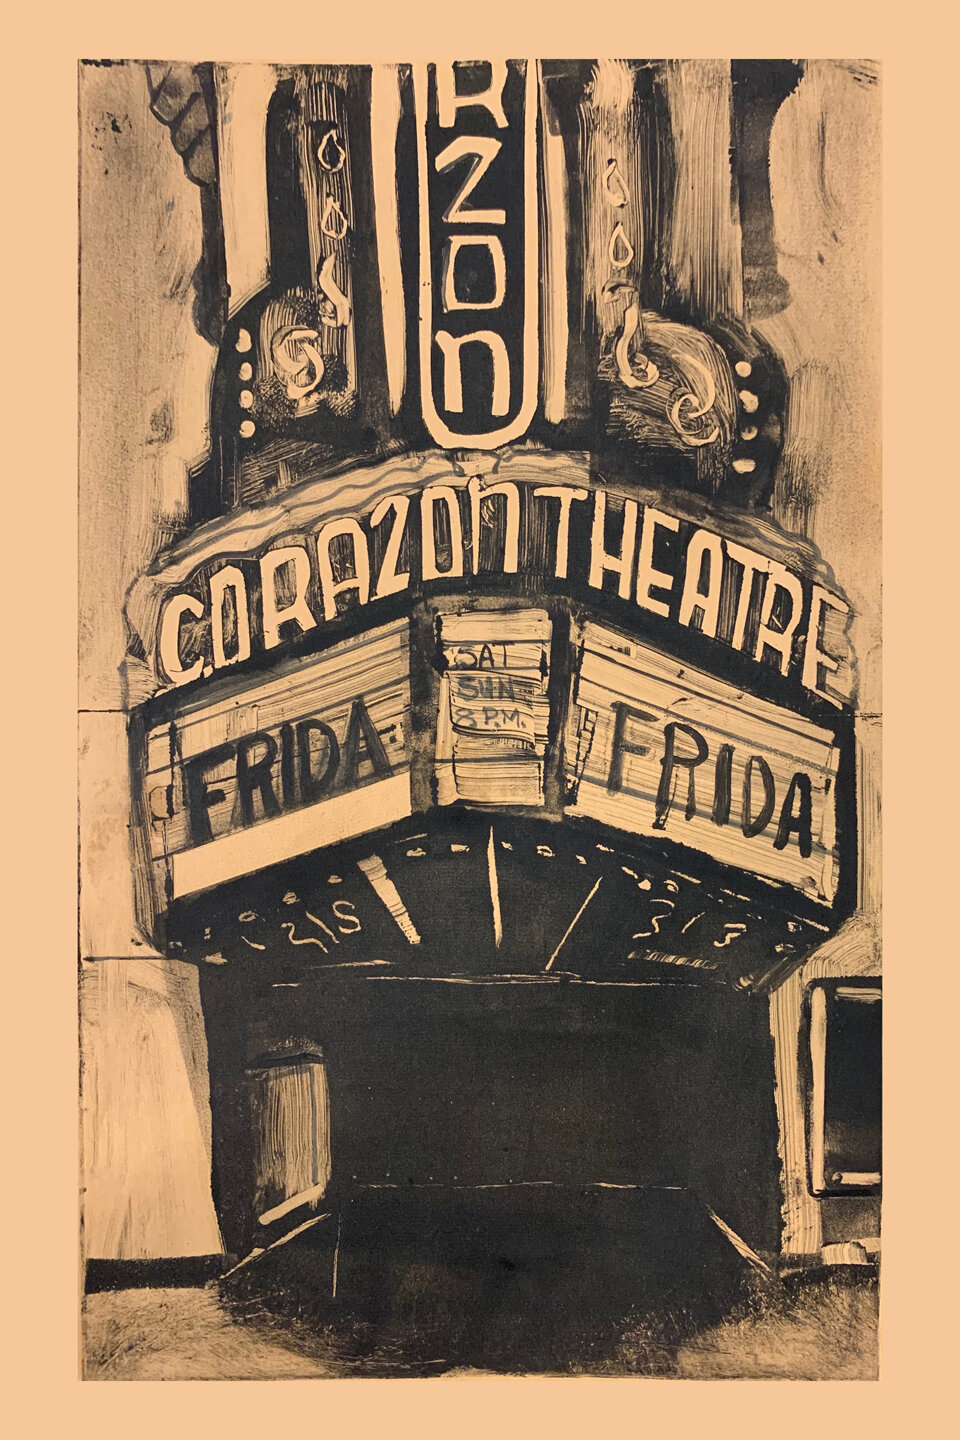 El Corazon Theatre, 2019